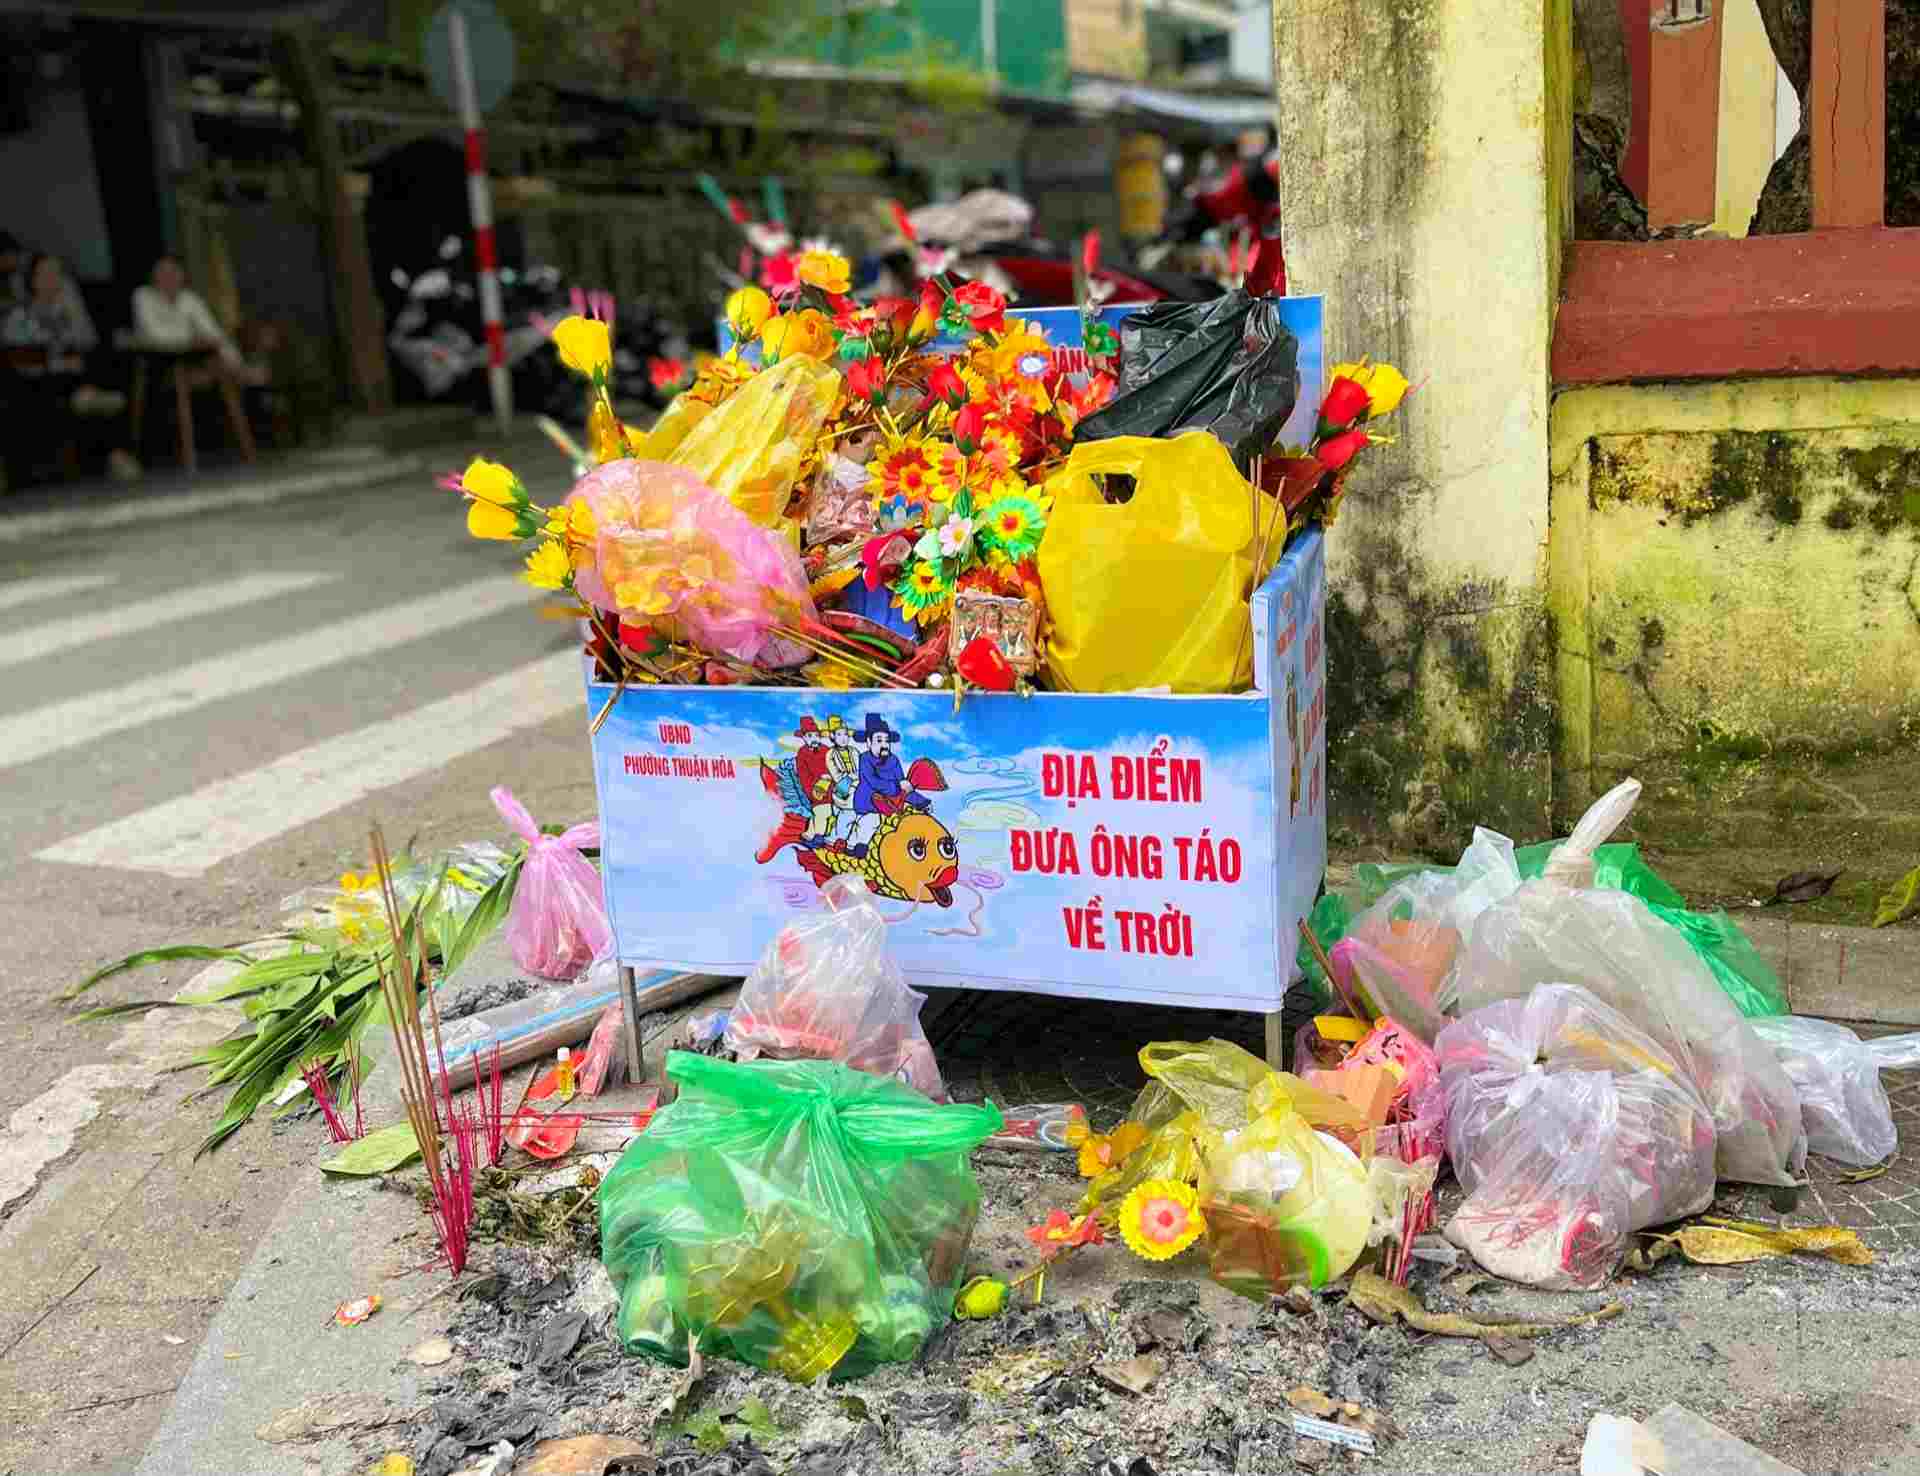 Năm nay, rất nhiều địa phương trên địa bàn tỉnh Thừa Thiên Huế đã phát huy, triển khai thêm các điểm tiễn ông Táo tập trung để người dân có thể bỏ rác tâm linh sau khi cúng. 